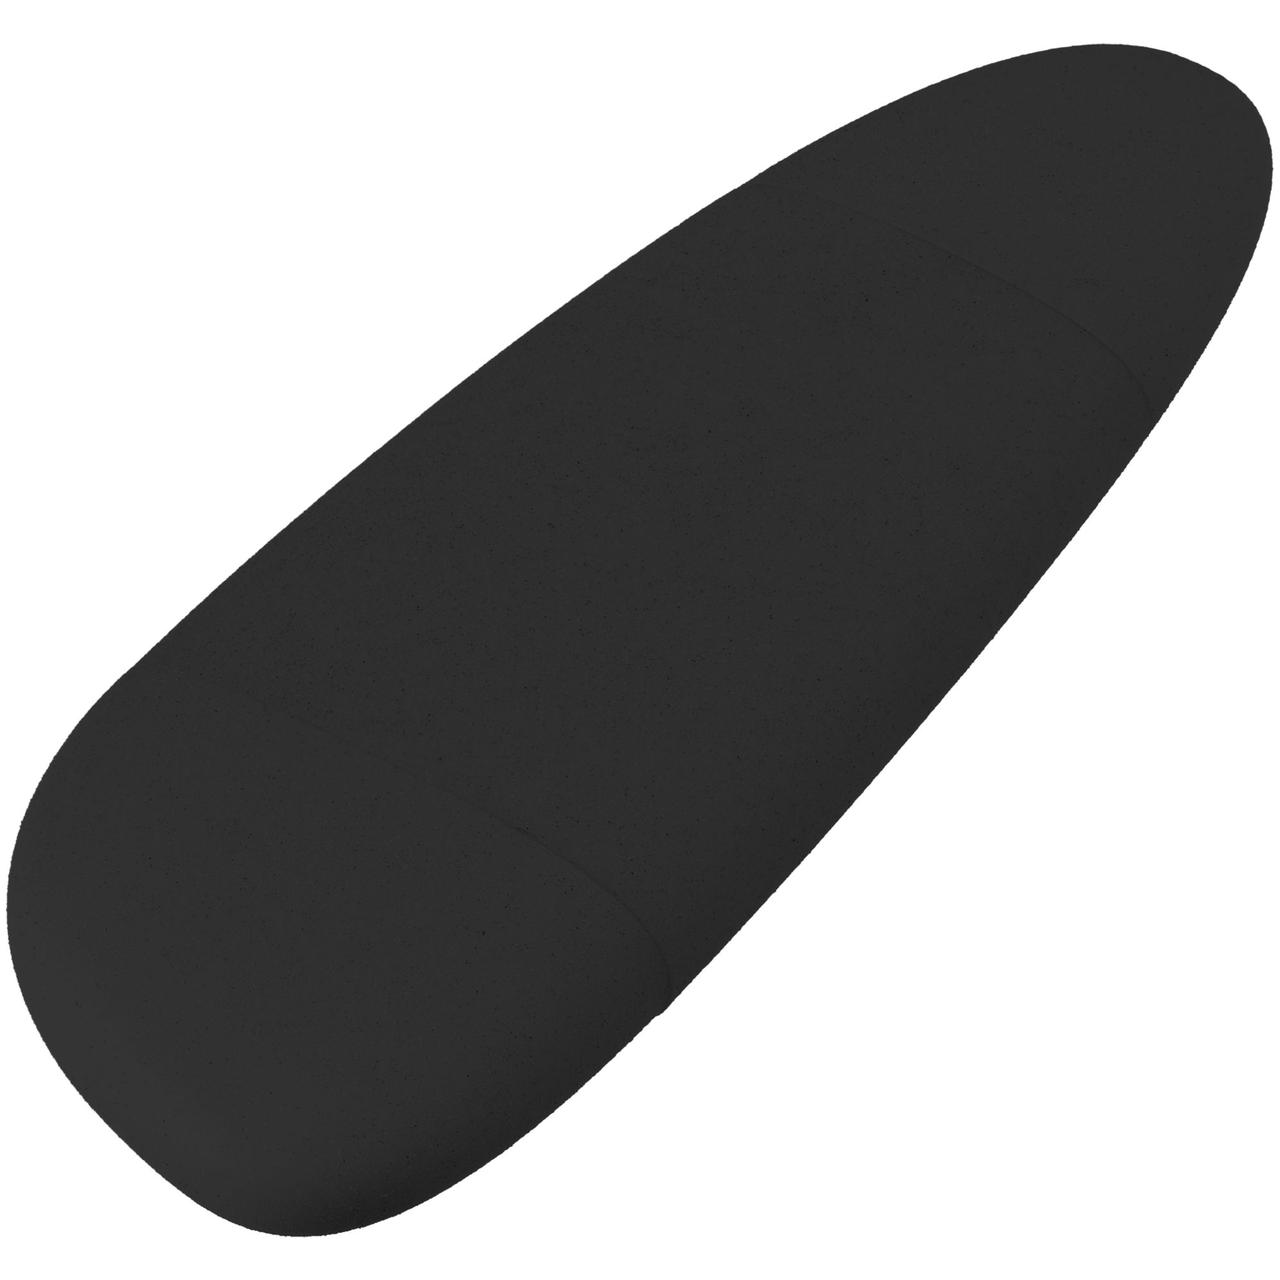 Флешка Pebble Type-C, USB 3.0, черная, 16 Гб (артикул 11810.36)